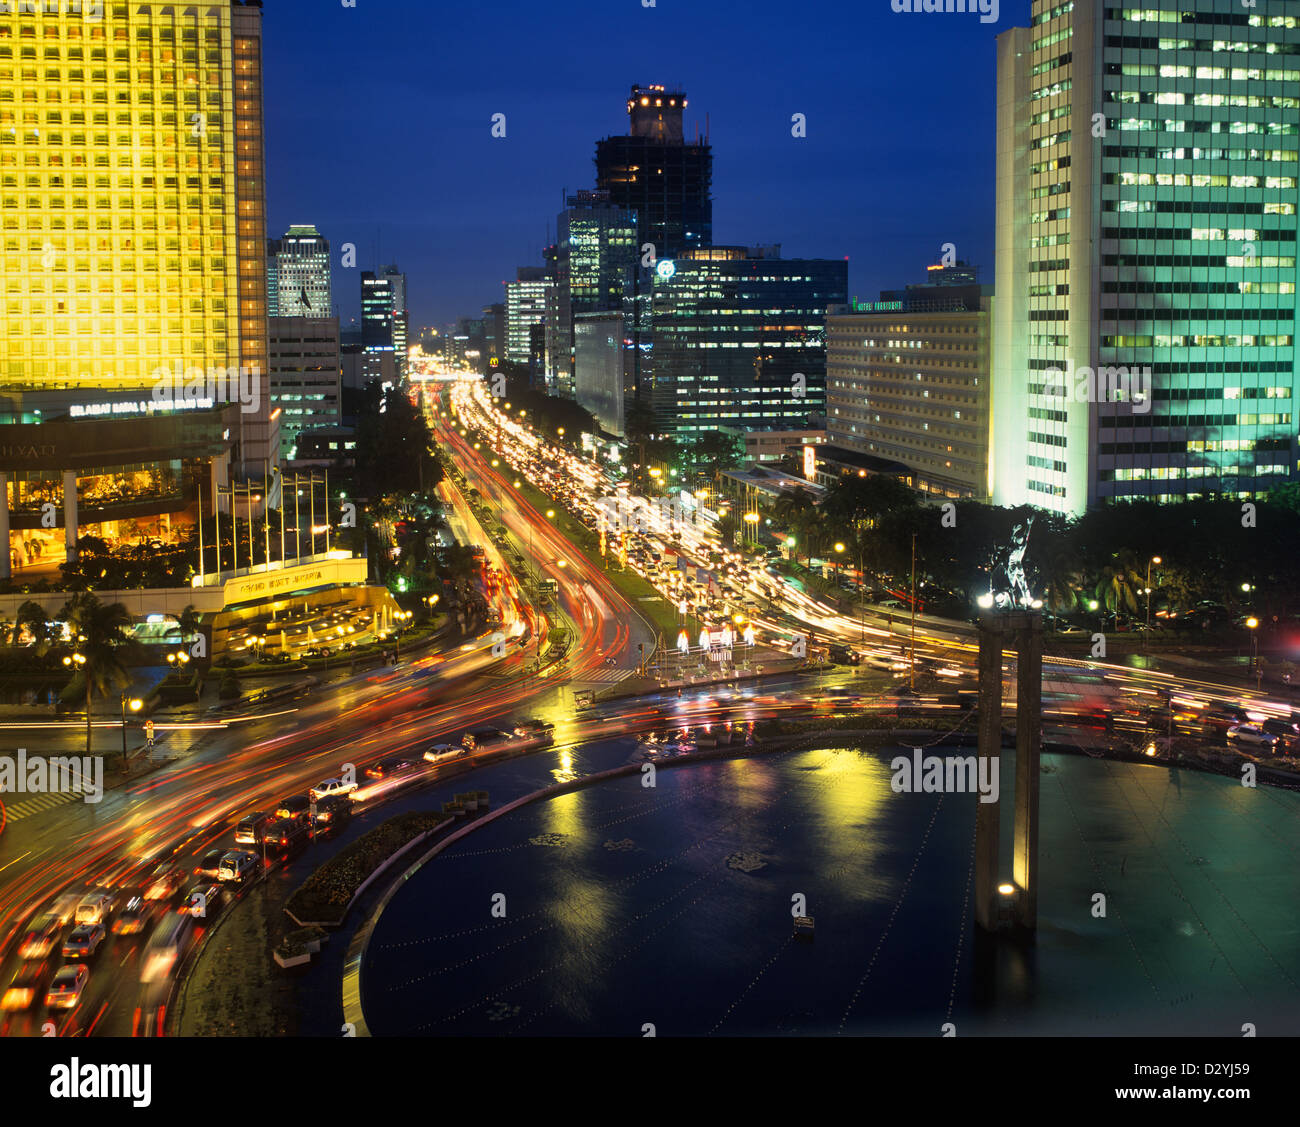 Indonesien, Java, Jakarta, Abend Blick auf Zentral-Jakarta mit Hotel Indonesien Kreisverkehr und busy Jalan m.h. Thamrin Stockfoto